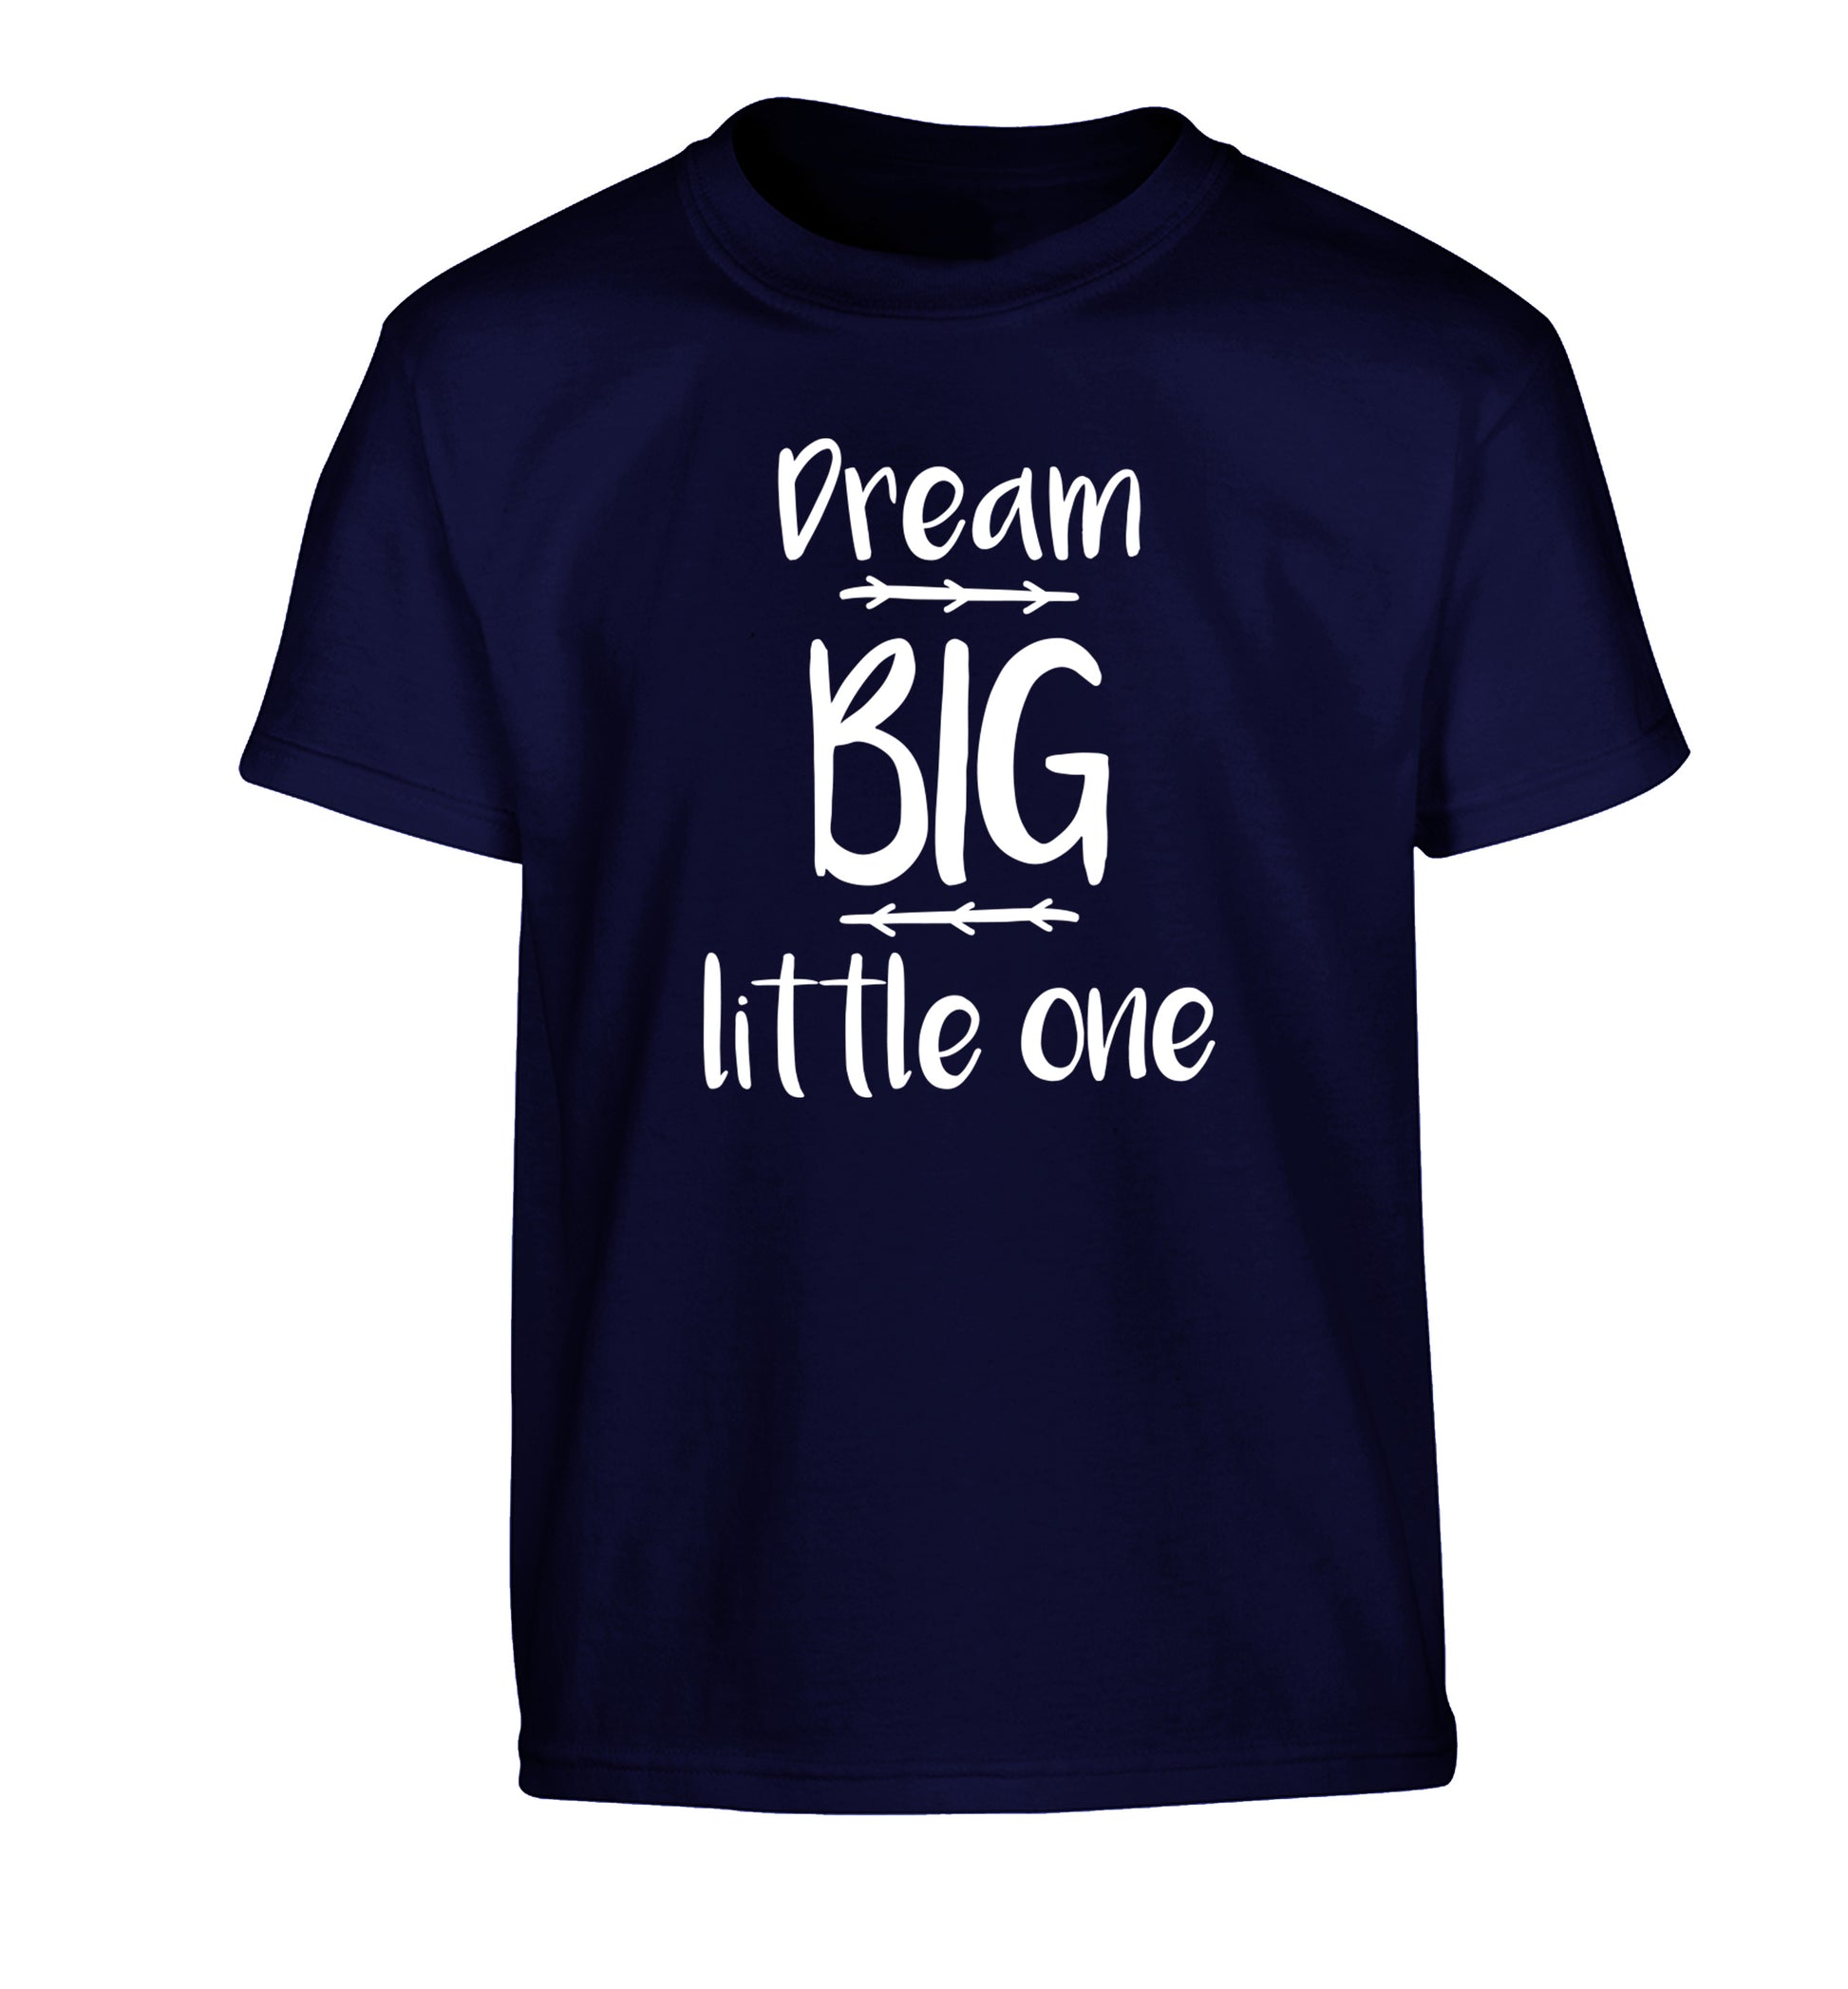 Dream big little one Children's navy Tshirt 12-14 Years